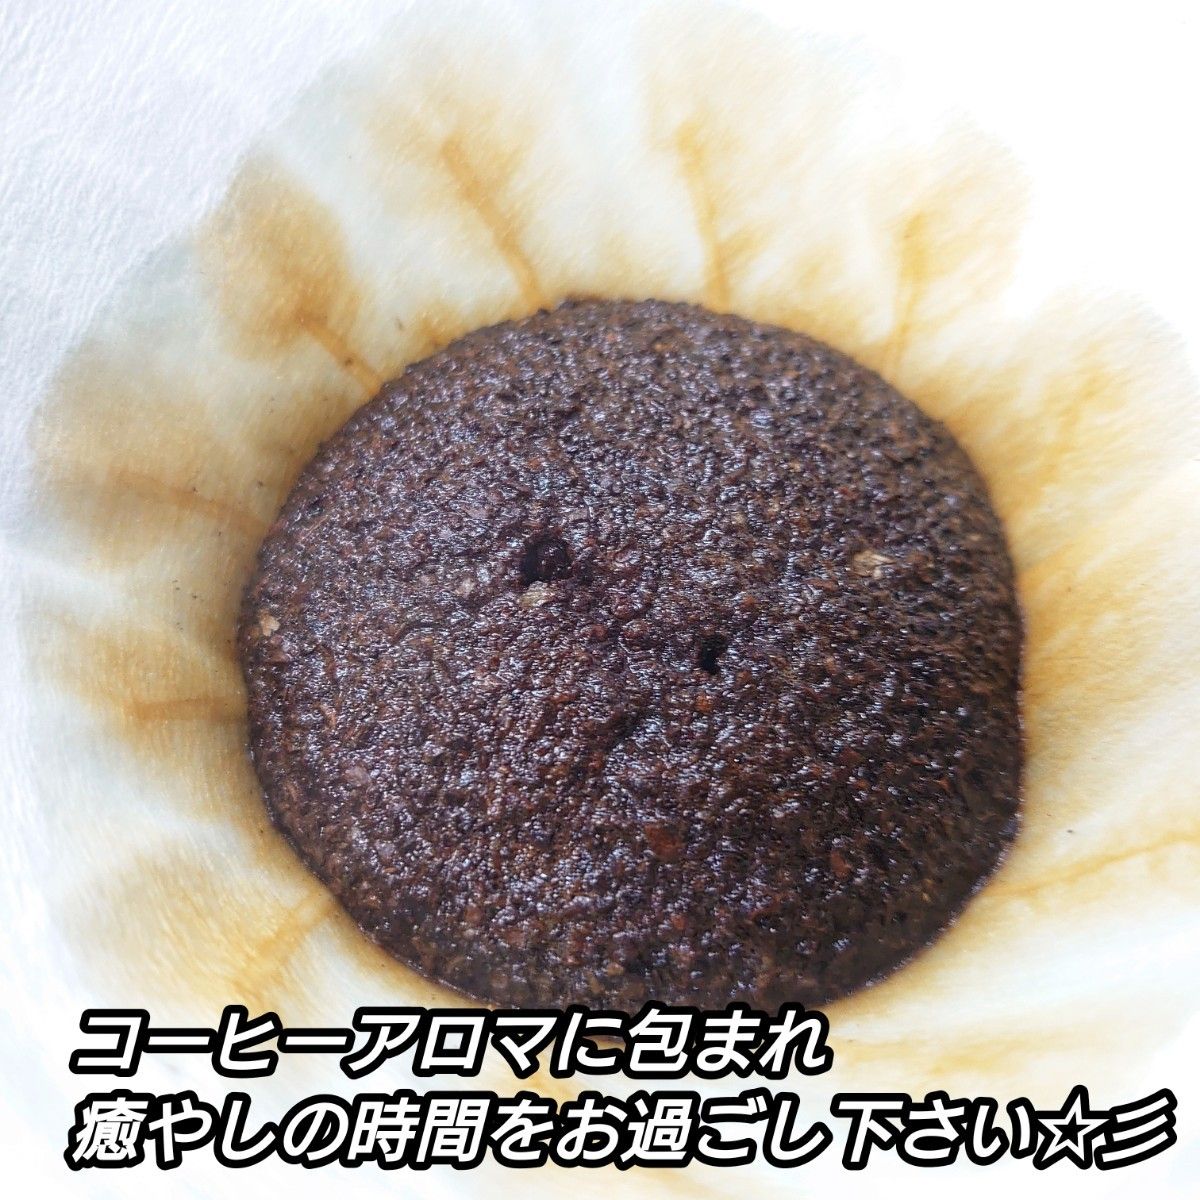 【豆】 モカ イルガチャフェ 生豆時 400g エチオピア コーヒー  珈琲 自家焙煎 コーヒー豆 モカコーヒー